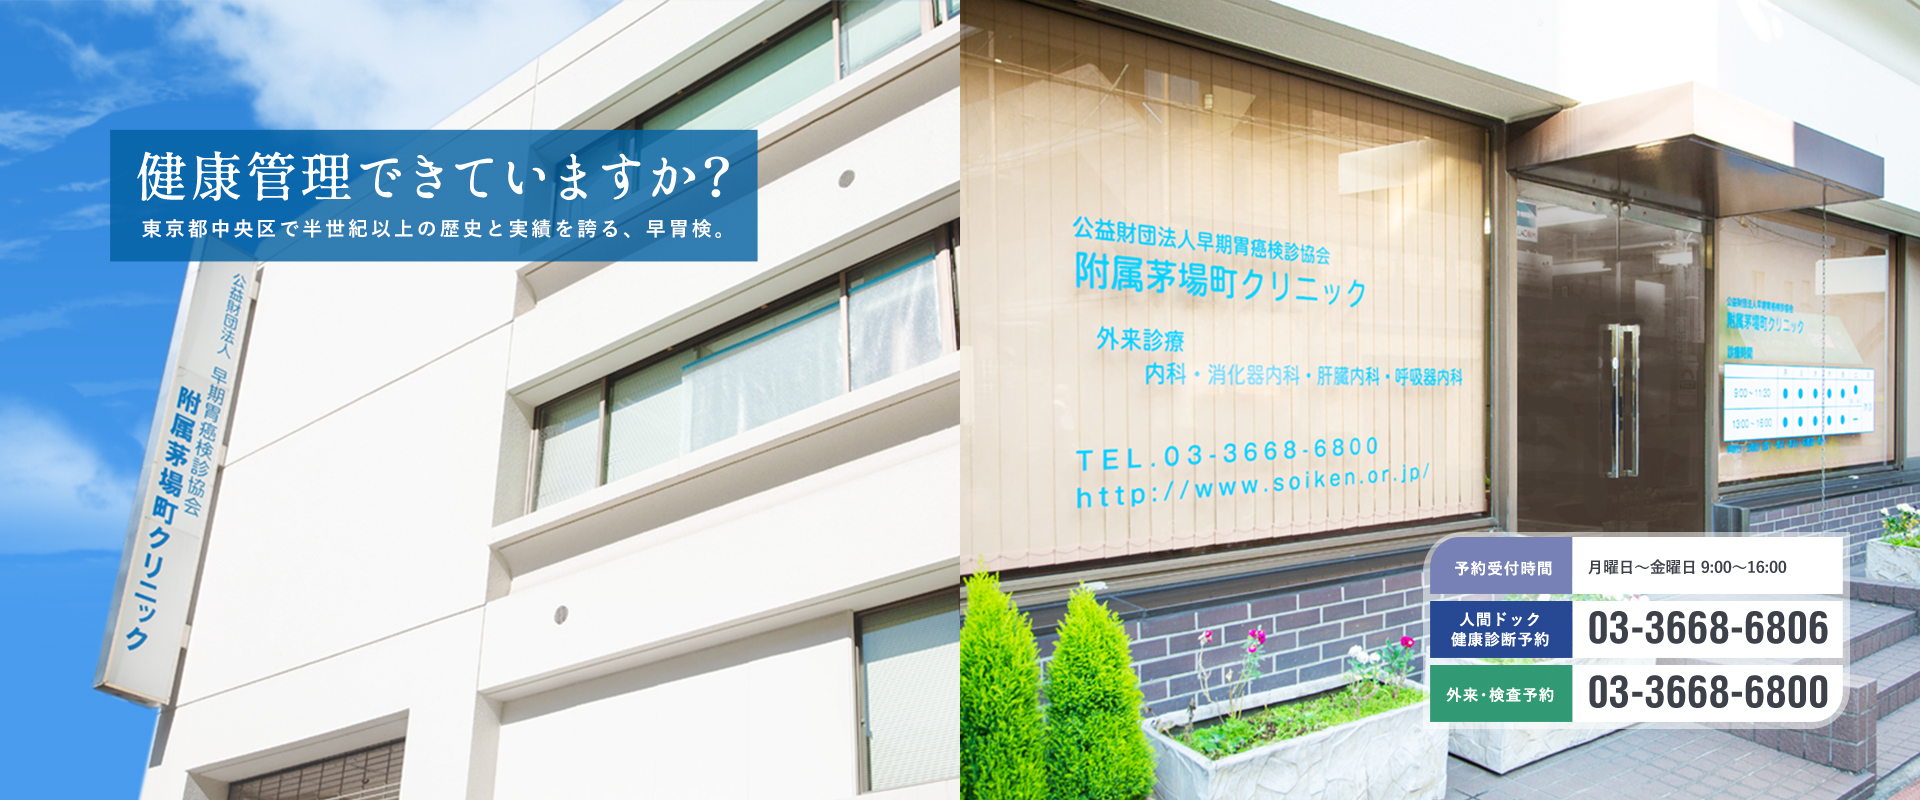 健康管理できていますか？東京都中央区で半世紀以上の歴史と実績を誇る、早胃検。